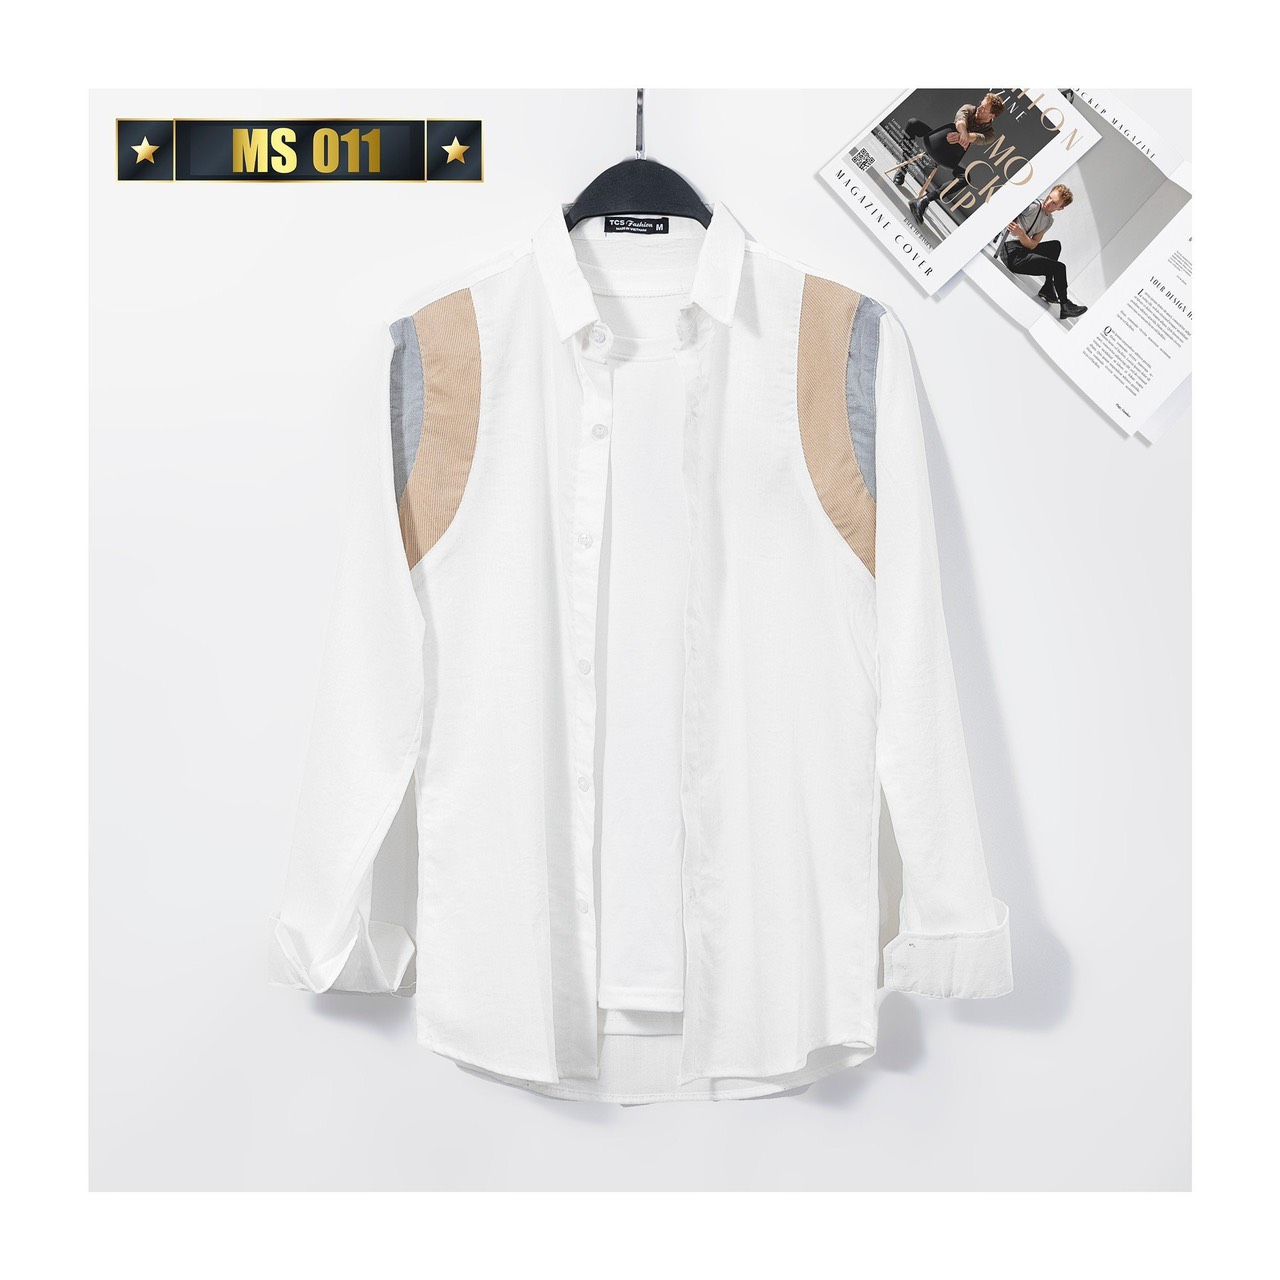 Áo sơ mi, áo sơ mi nam tay dài 2 màu trắng-đen phối họa tiết cao cấp thời trang thương hiệu Chandi mẫu mới MS11